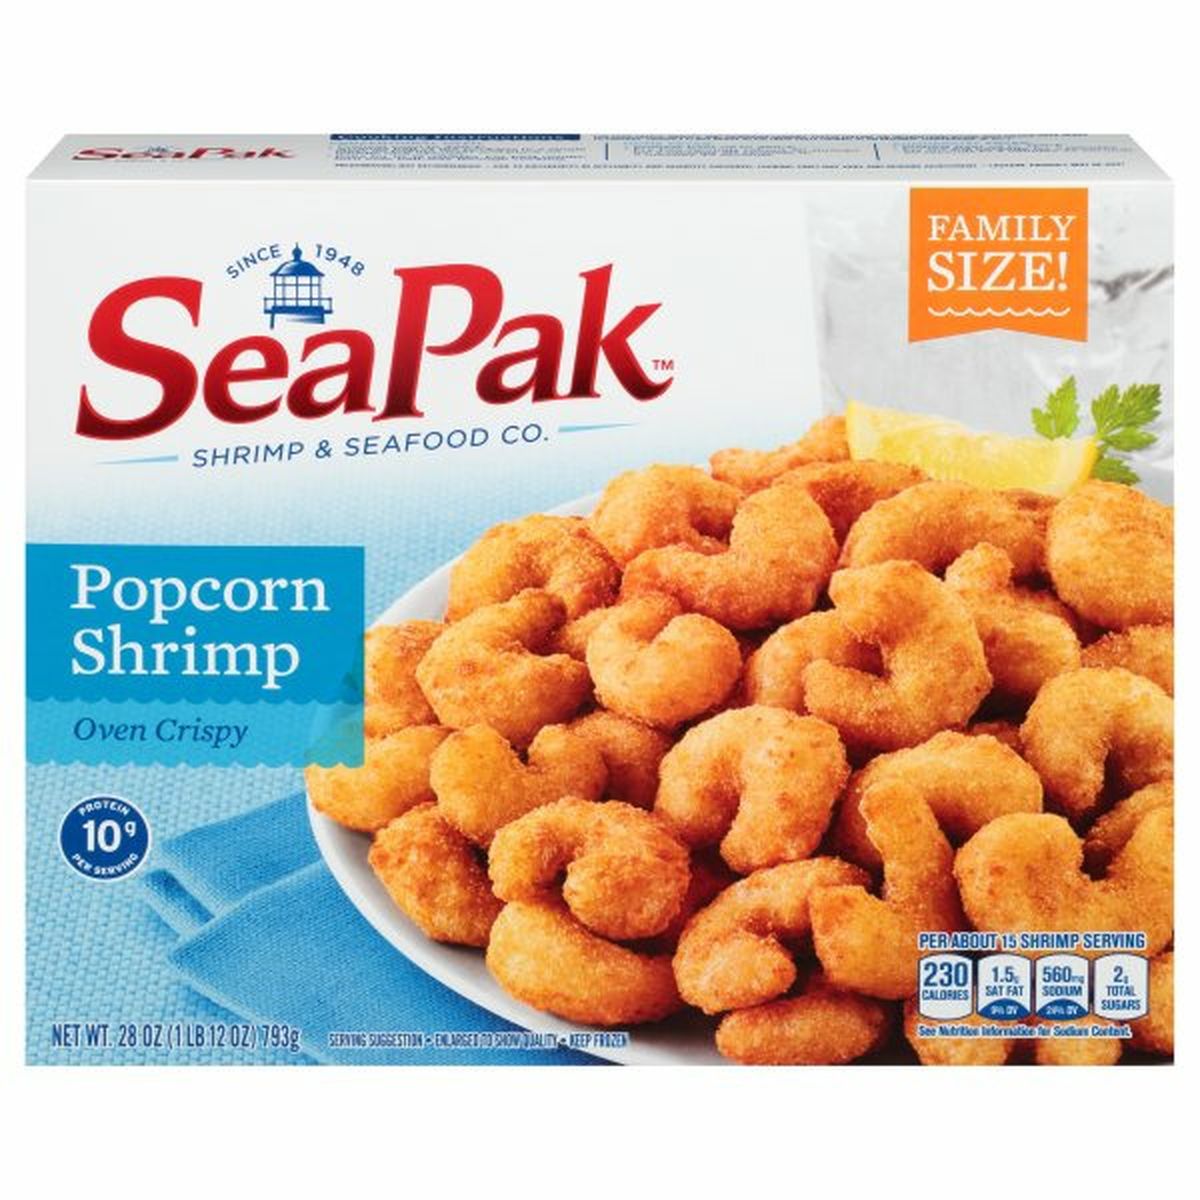 Calories in SeaPak Popcorn Shrimp, Oven Crispy, Family Size